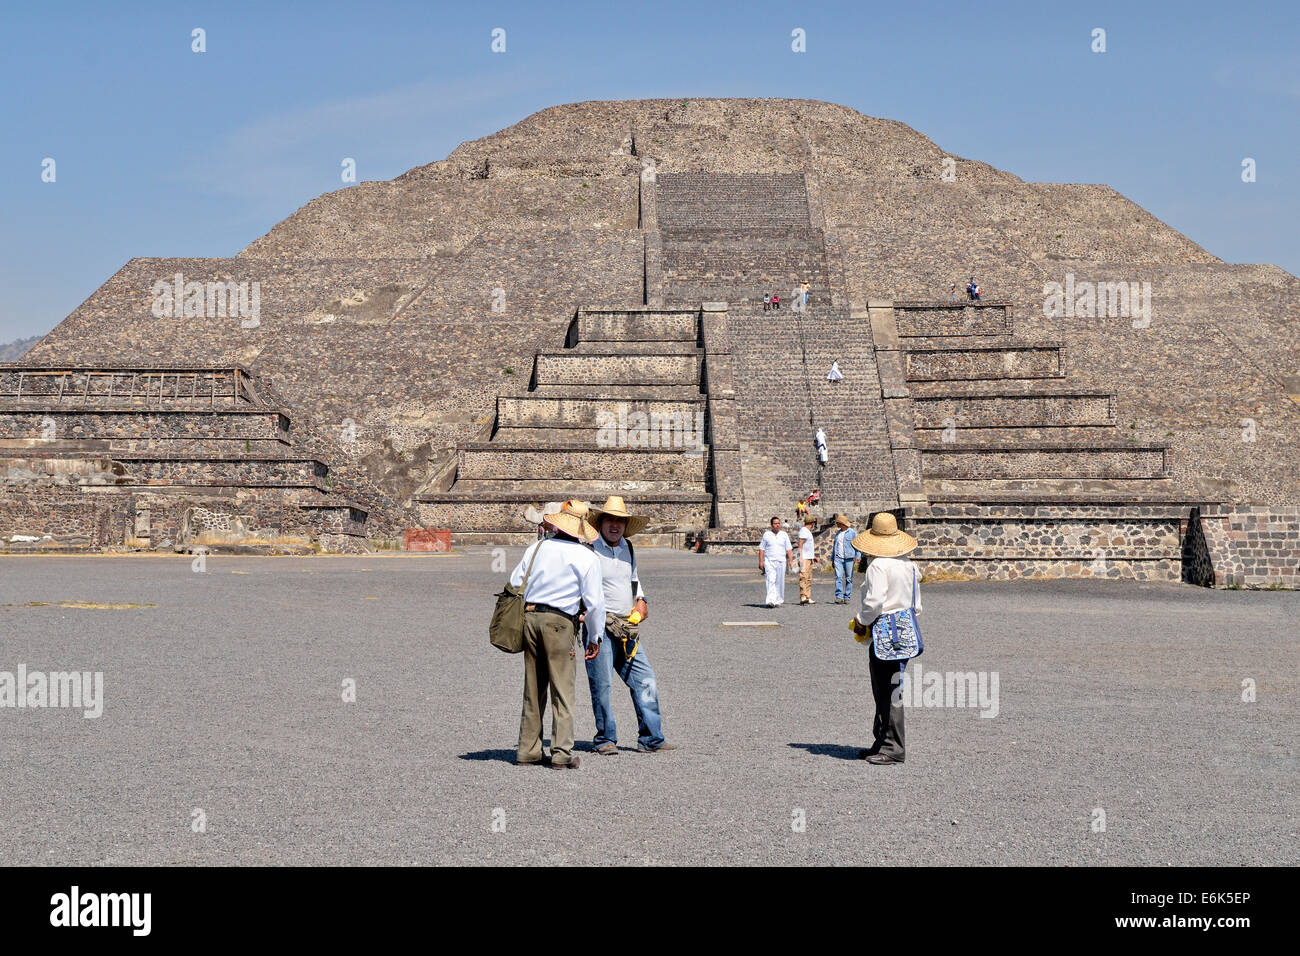 Colporteurs et les touristes en face de la pyramide de la Lune ou Piramide de la Luna, Site du patrimoine mondial de l'UNESCO Site Archéologique Banque D'Images